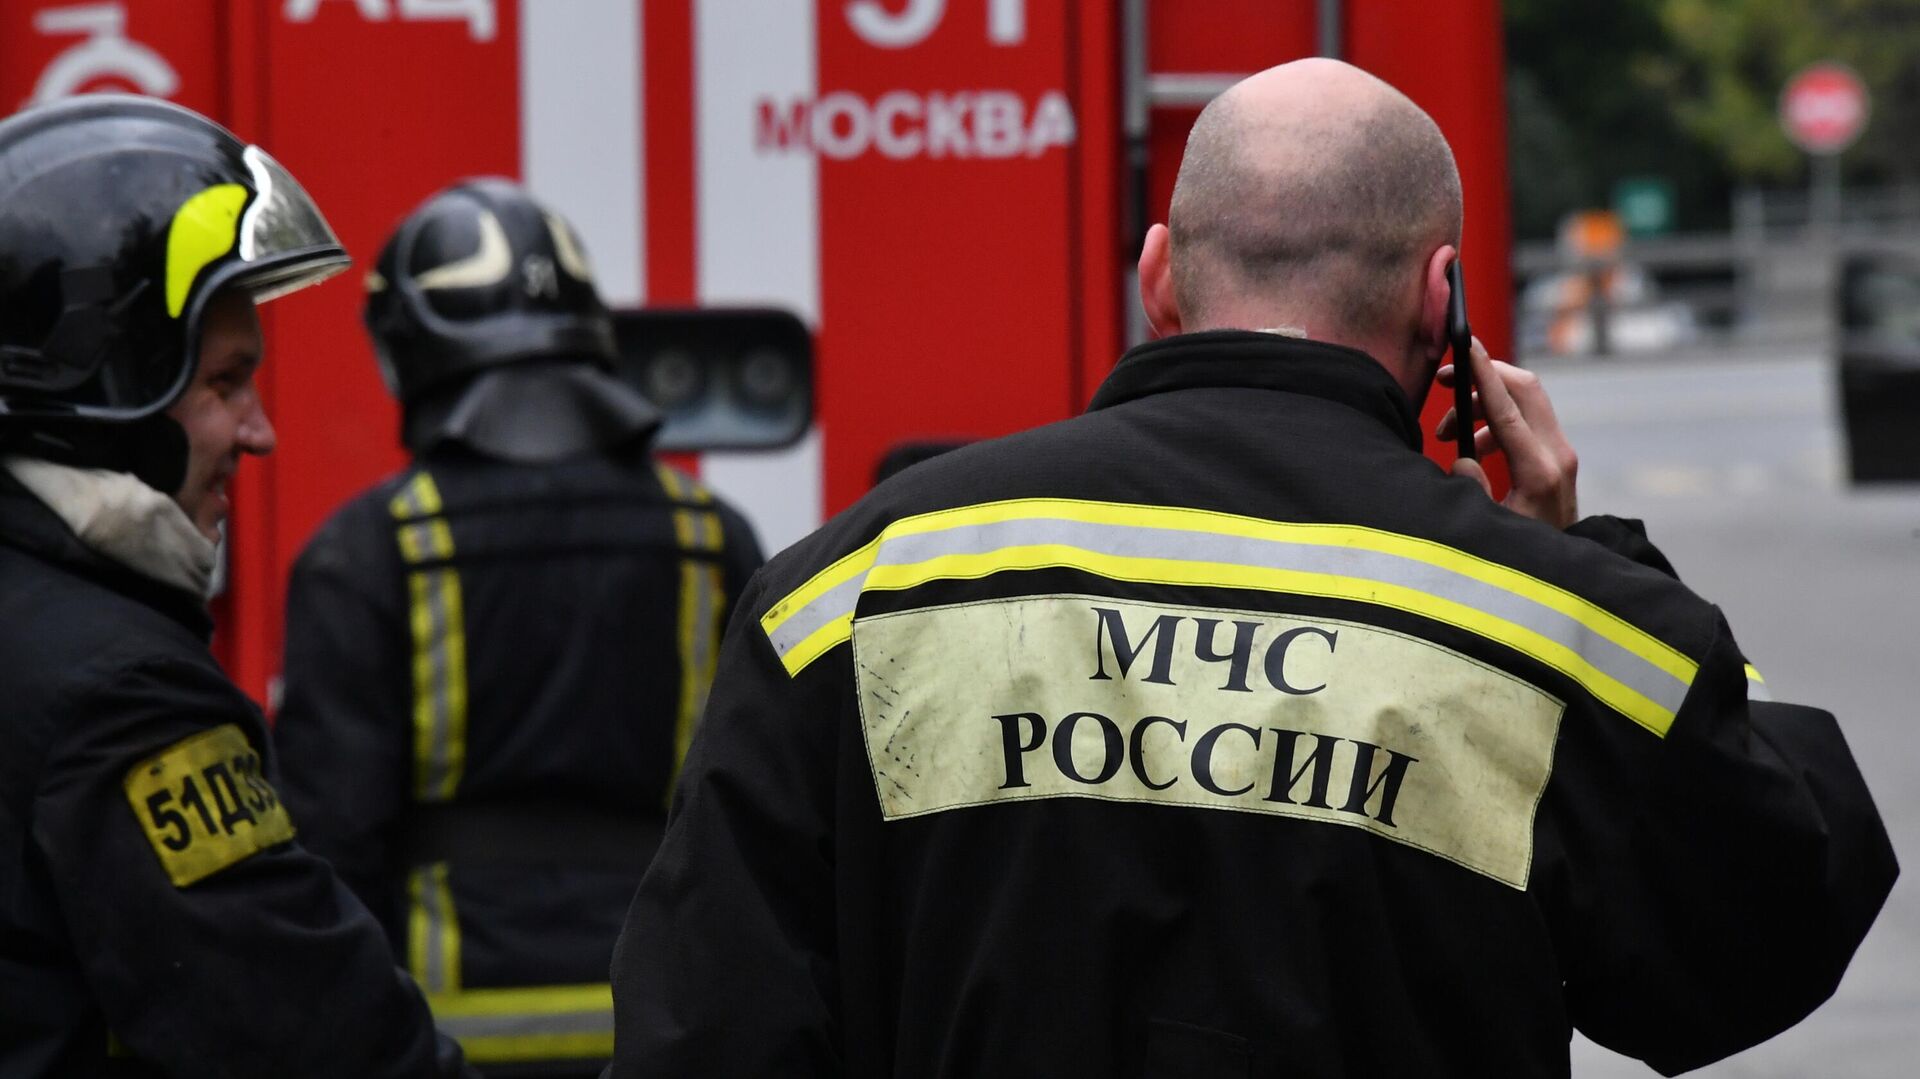 Пожар не нарушил работу теплоэнергетических объектов юго-запада Москвы 